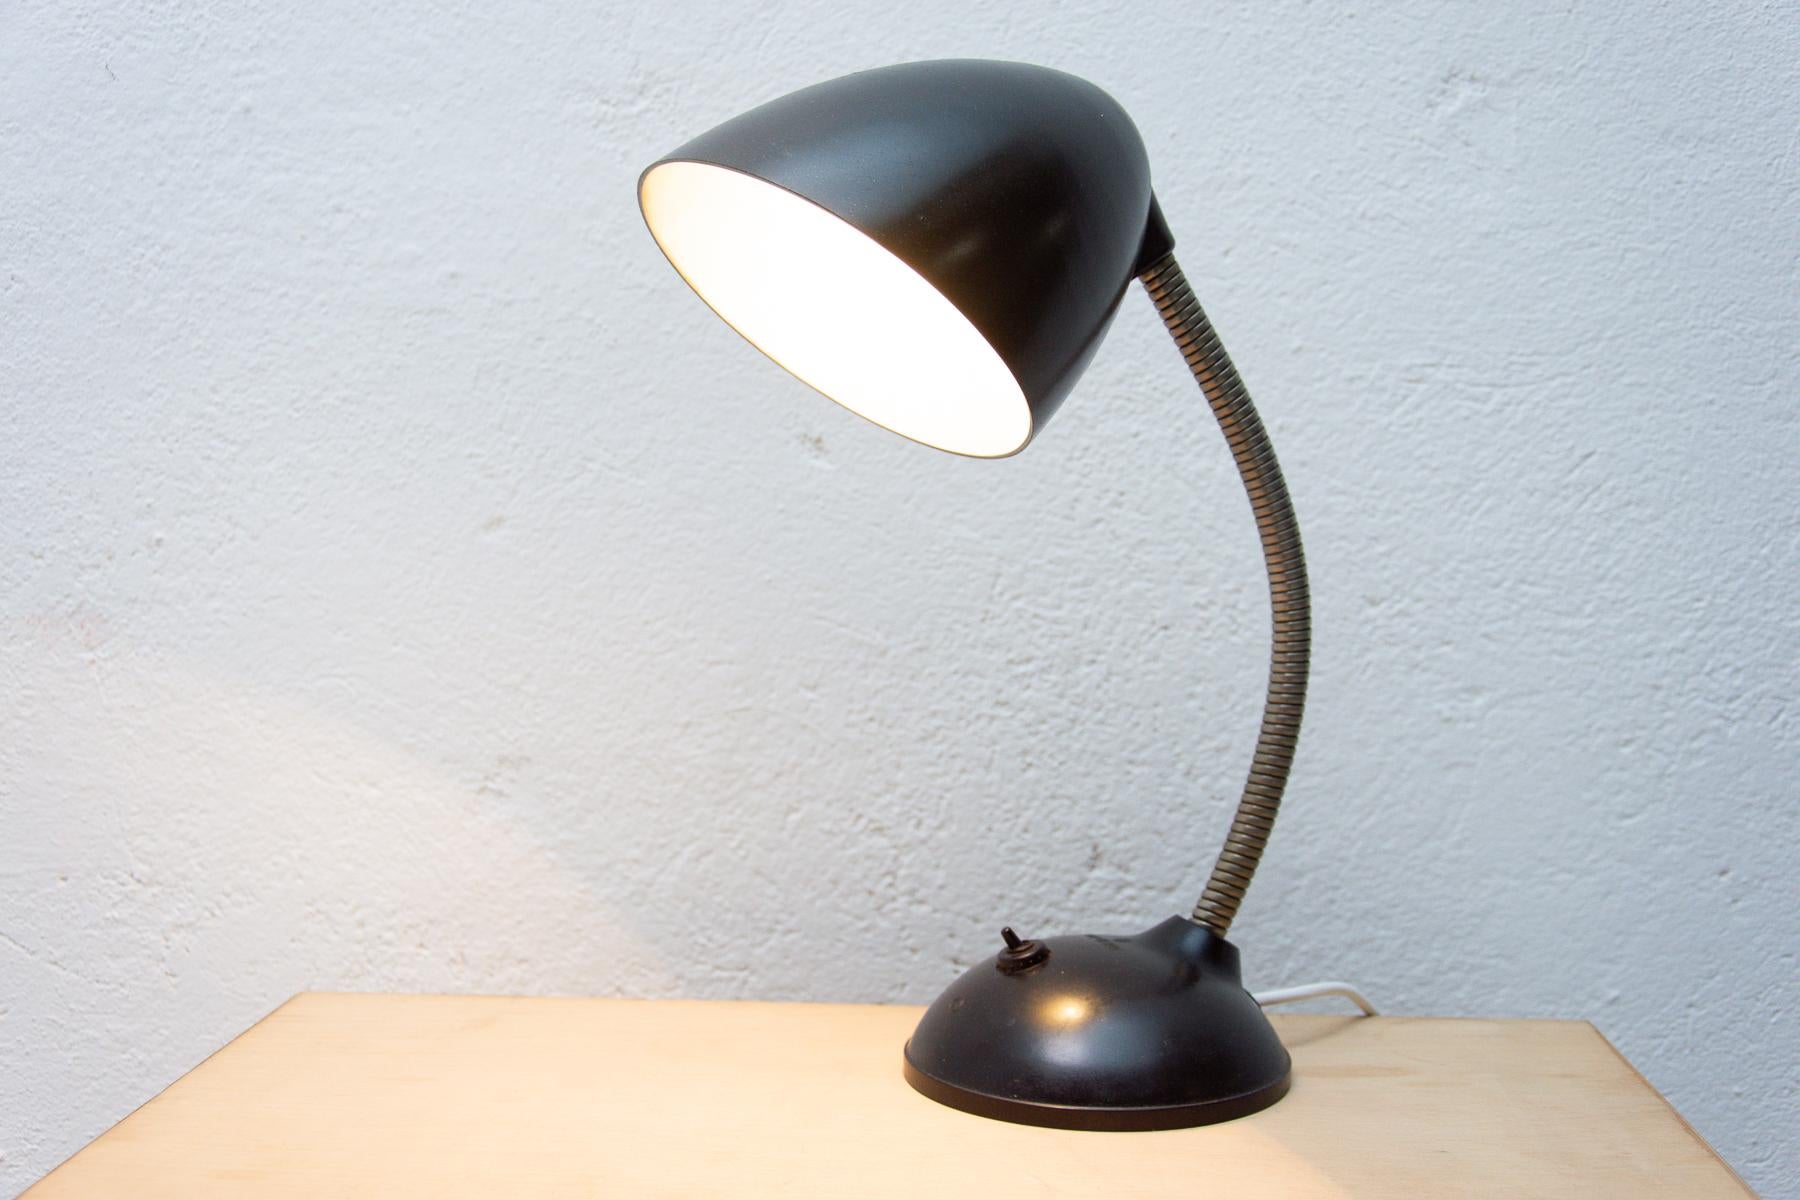 Le design de cette lampe de table en bakélite provient de Grande-Bretagne. Cette lampe à col de cygne a été conçue par Eric Kirkman Cole pour le marché de la République tchèque.
La production a ensuite été assurée par la société Elektrosvit sur le